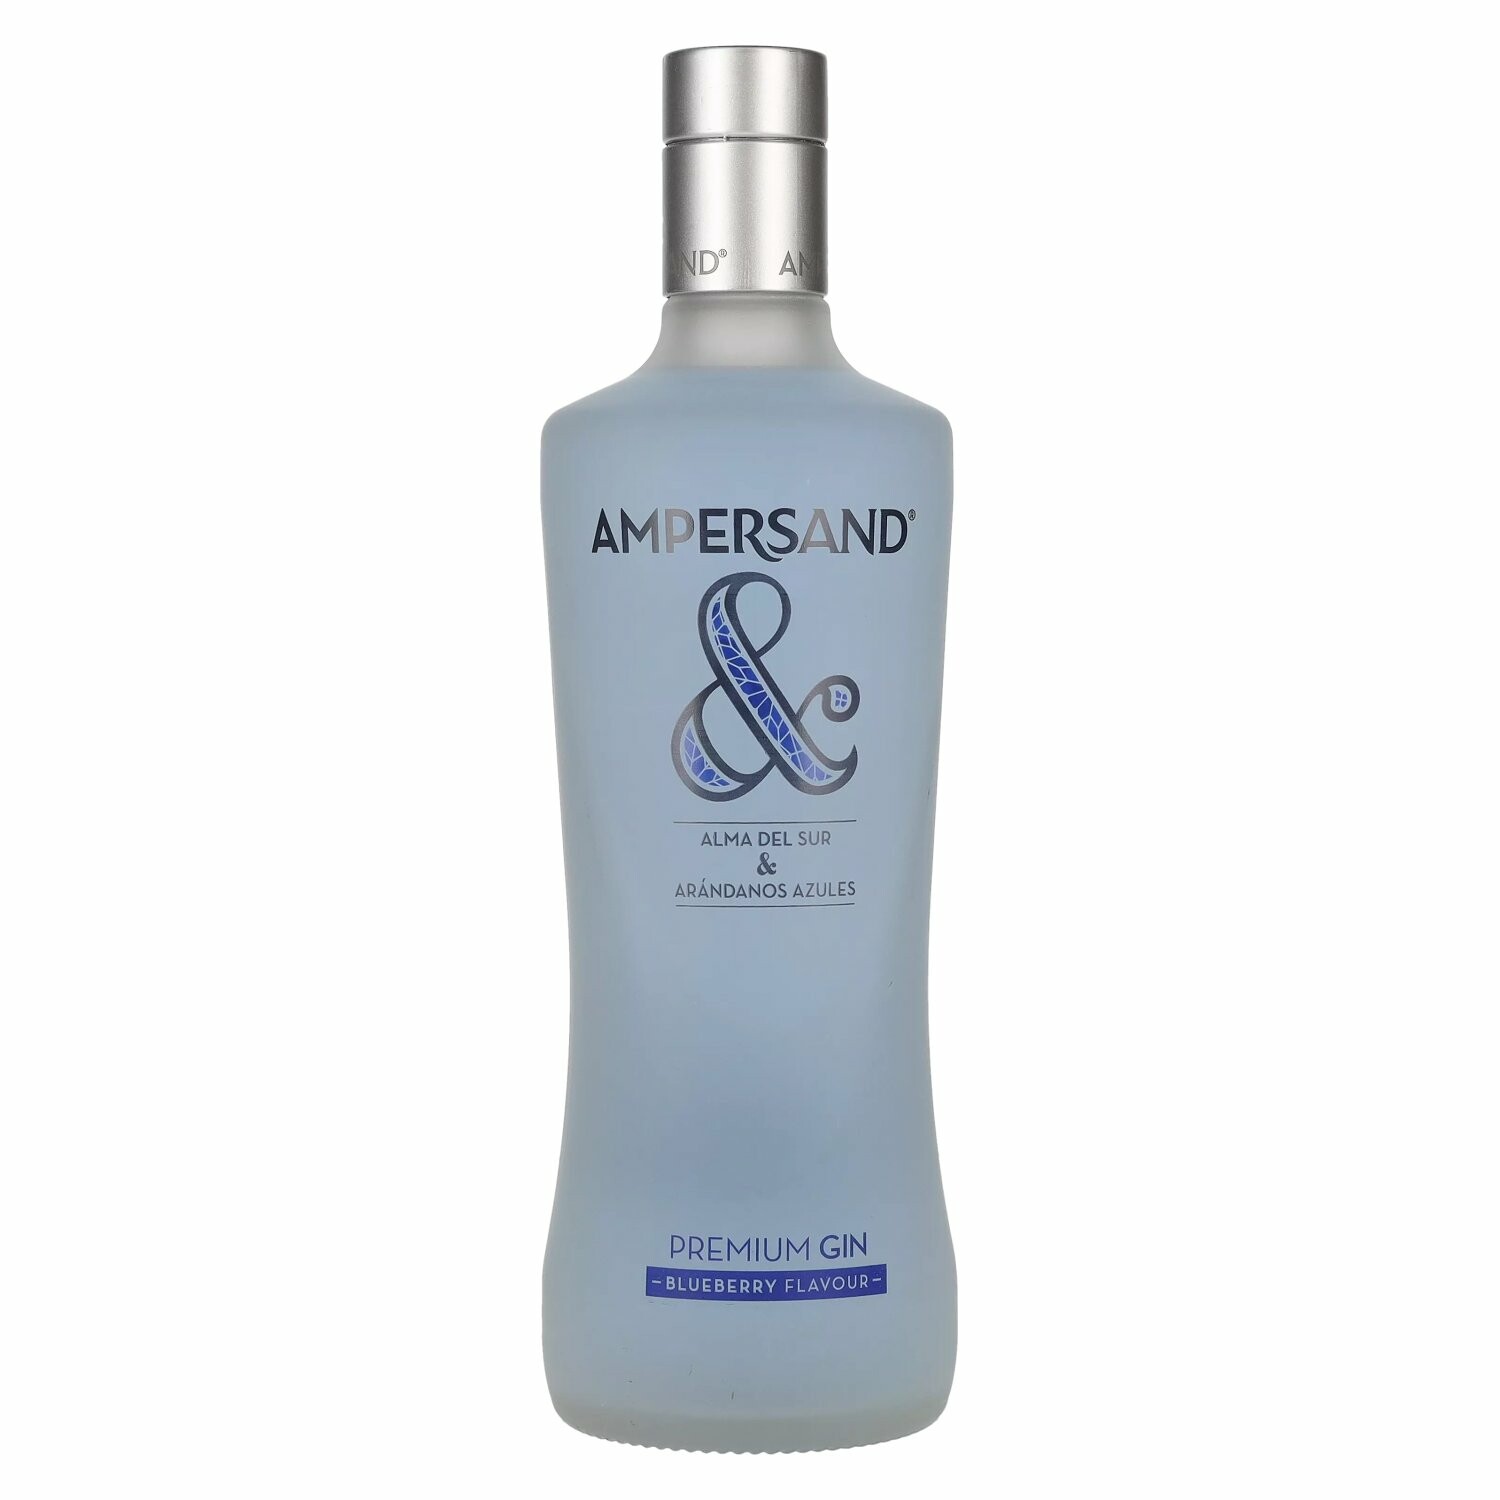 Ampersand BLUEBERRY FLAVOUR Premium Gin 37,5% Vol. 0,7l